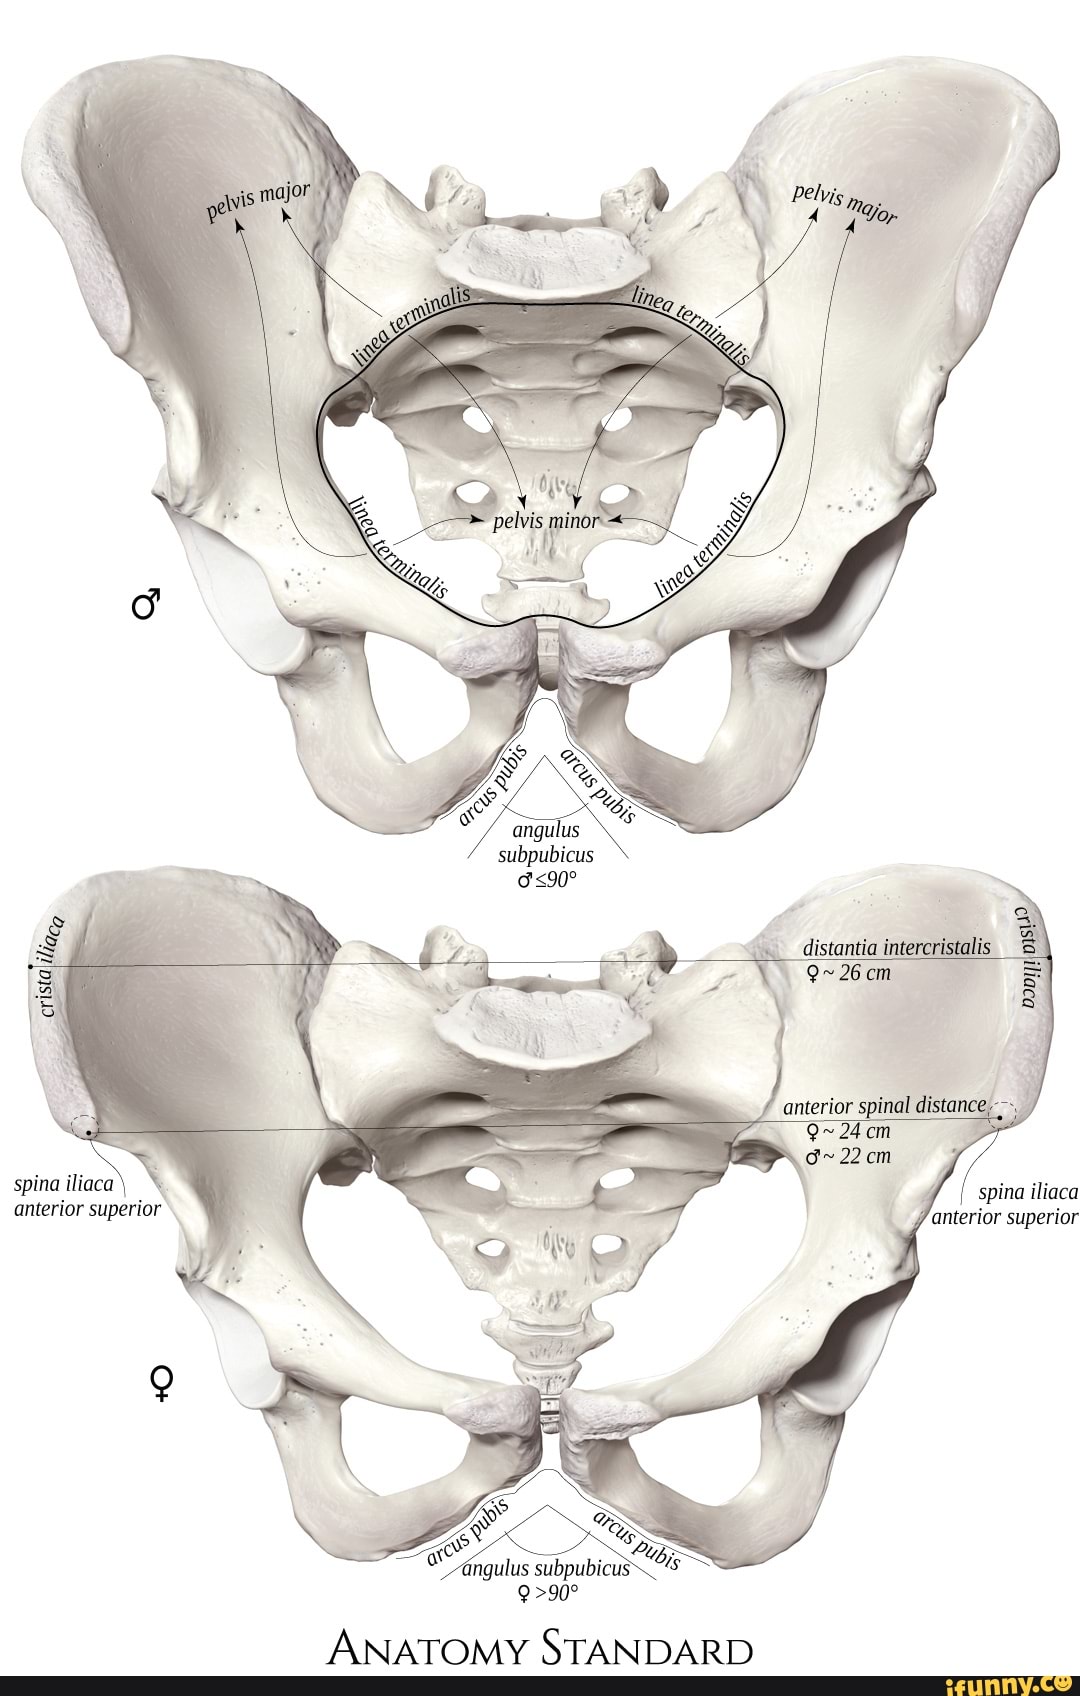 Spina anterior superior angulus subpubicus distontia intercristalis spina iliaca anterior superior STANDARD - )